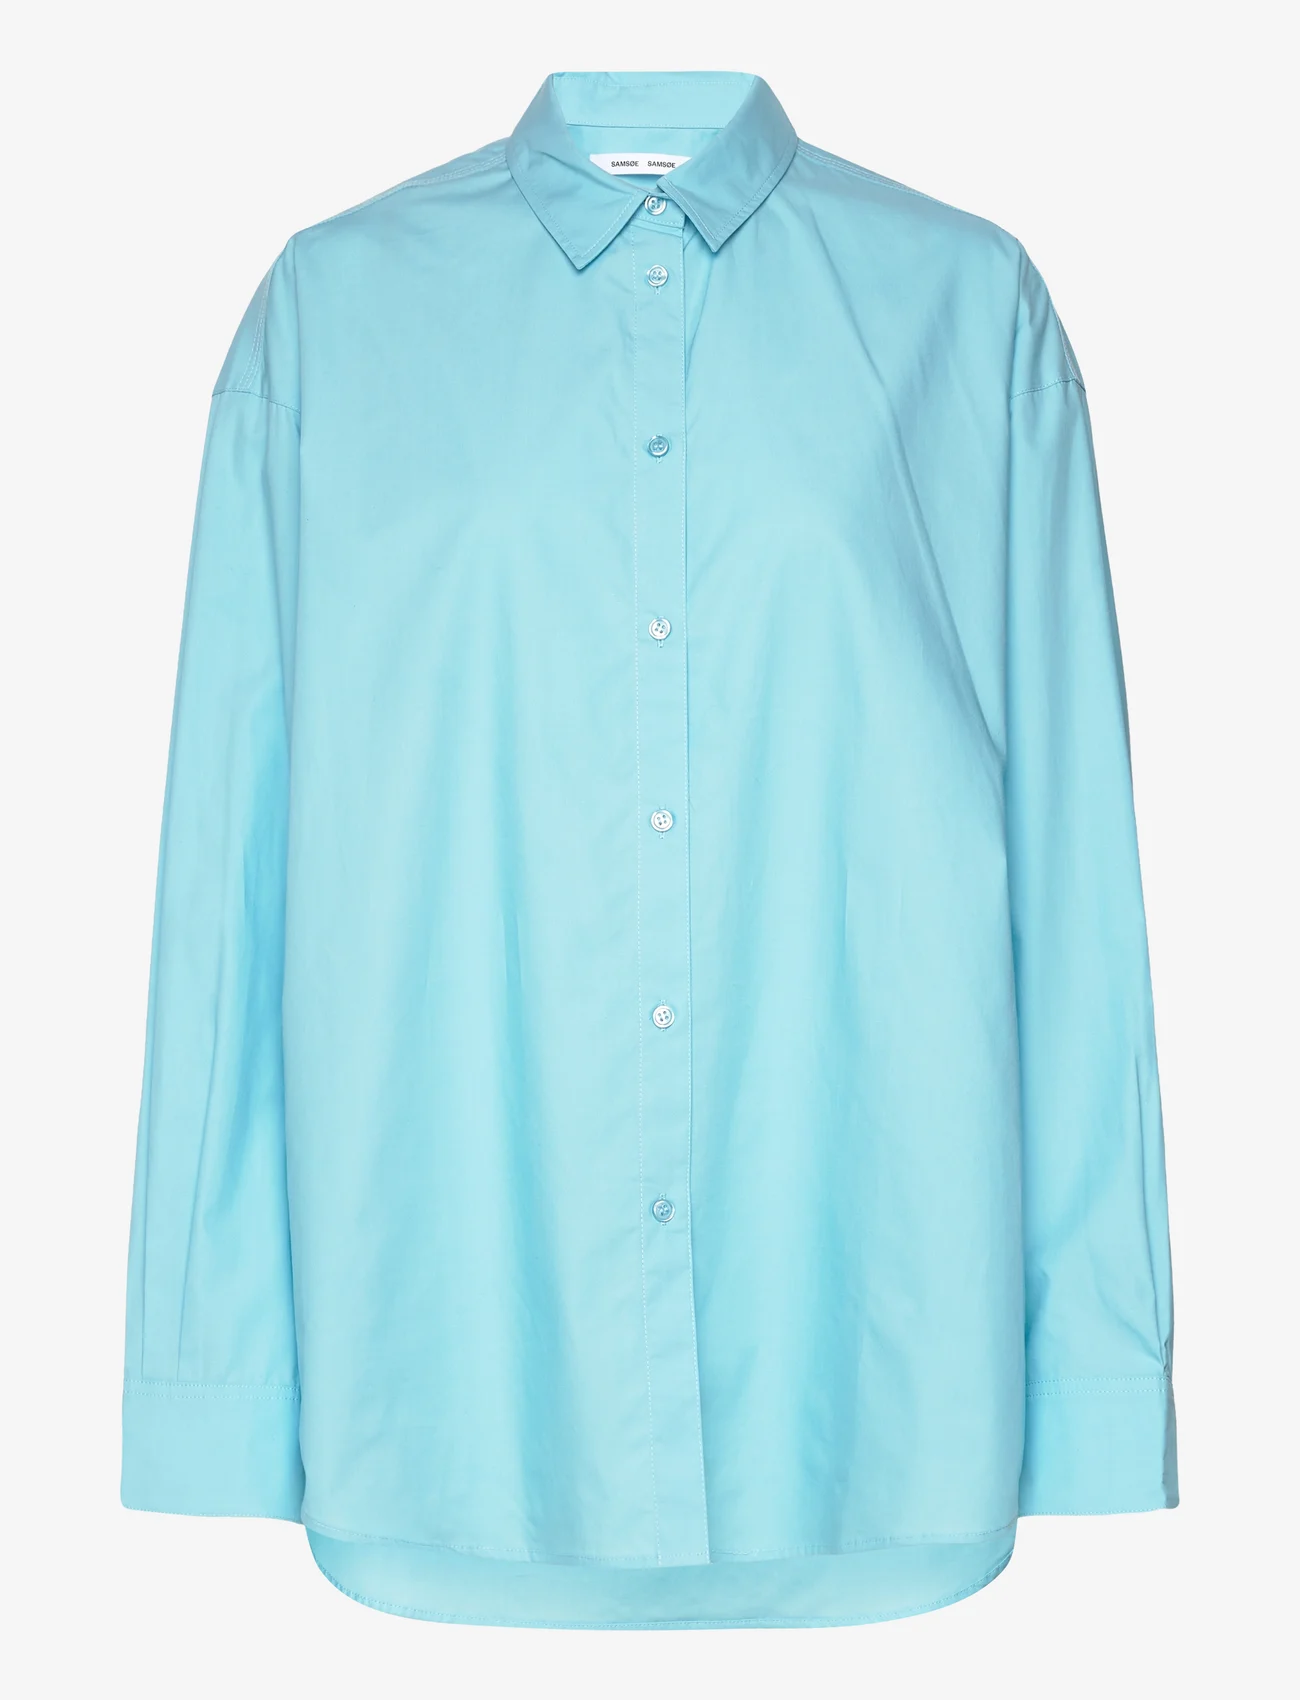 Samsøe Samsøe - Lua np shirt 14644 - marškiniai ilgomis rankovėmis - blue topaz - 0